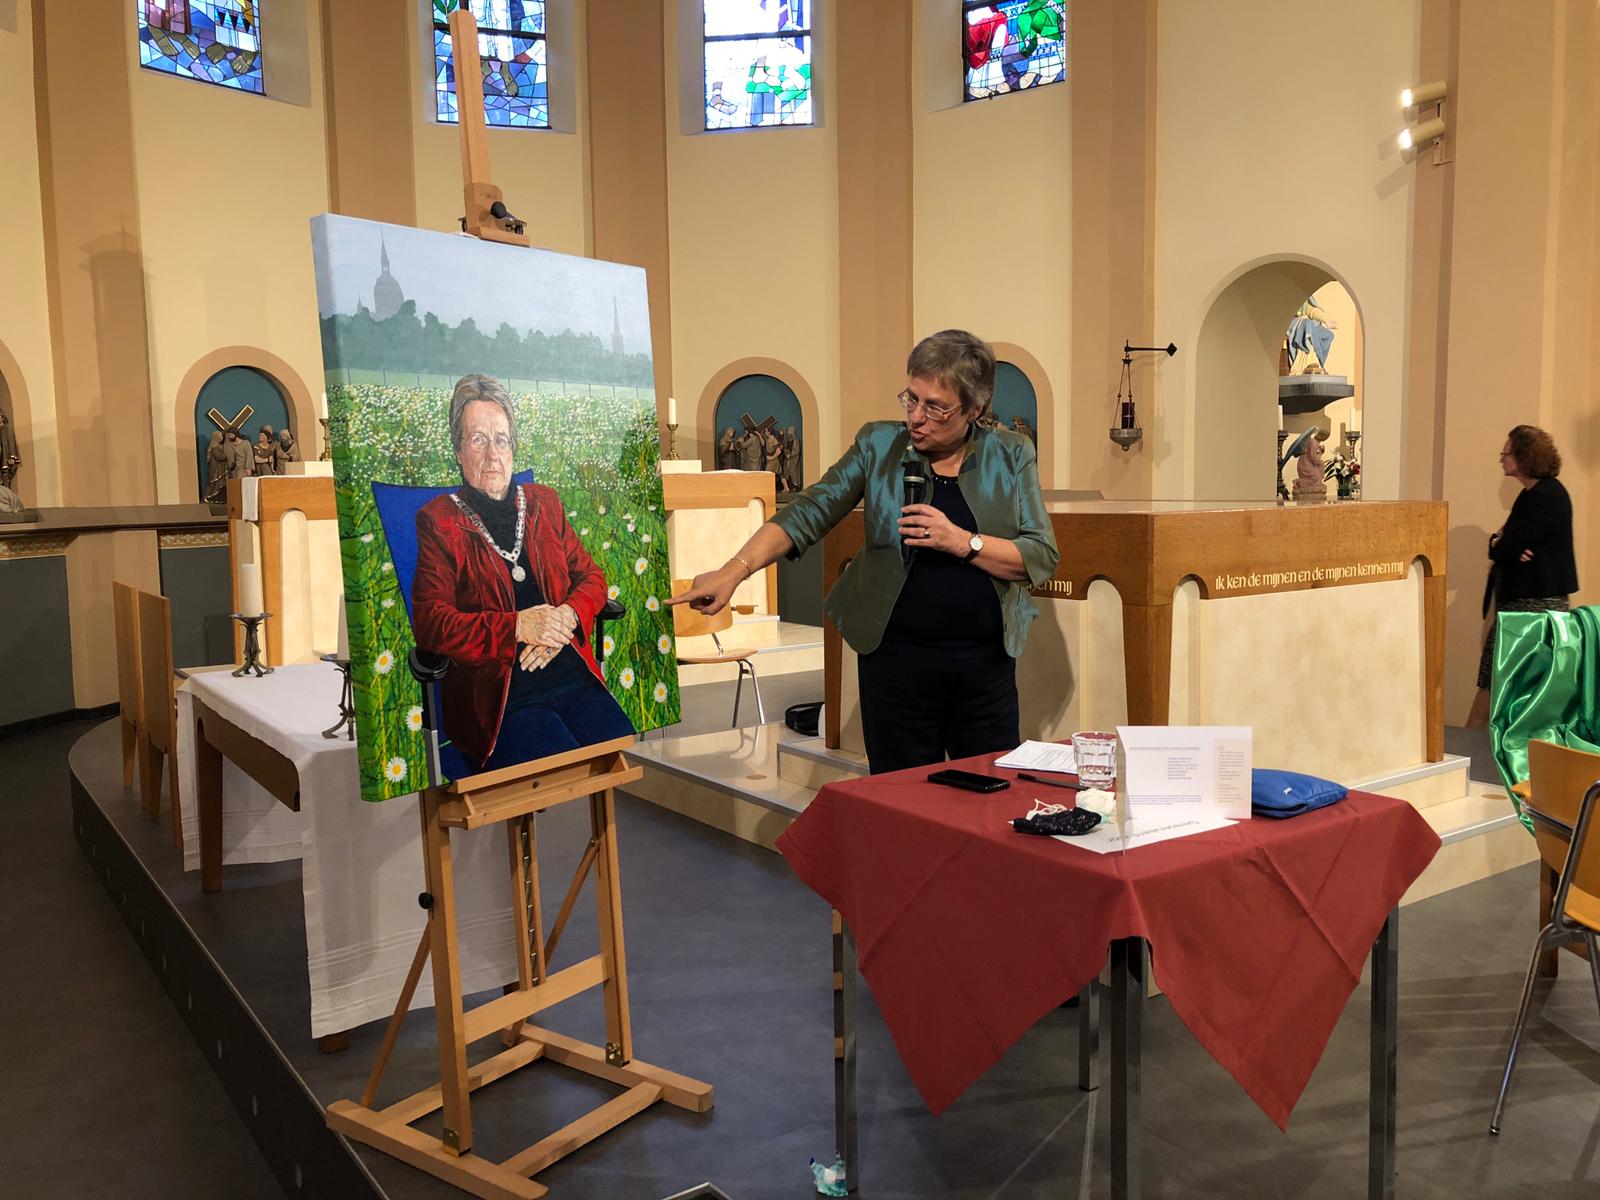 Begroeten Treble stuiten op Afscheid burgemeester Bloemen tijdens buitengewone raadsvergadering in kerk  De Goede Herder | Sleutelstad